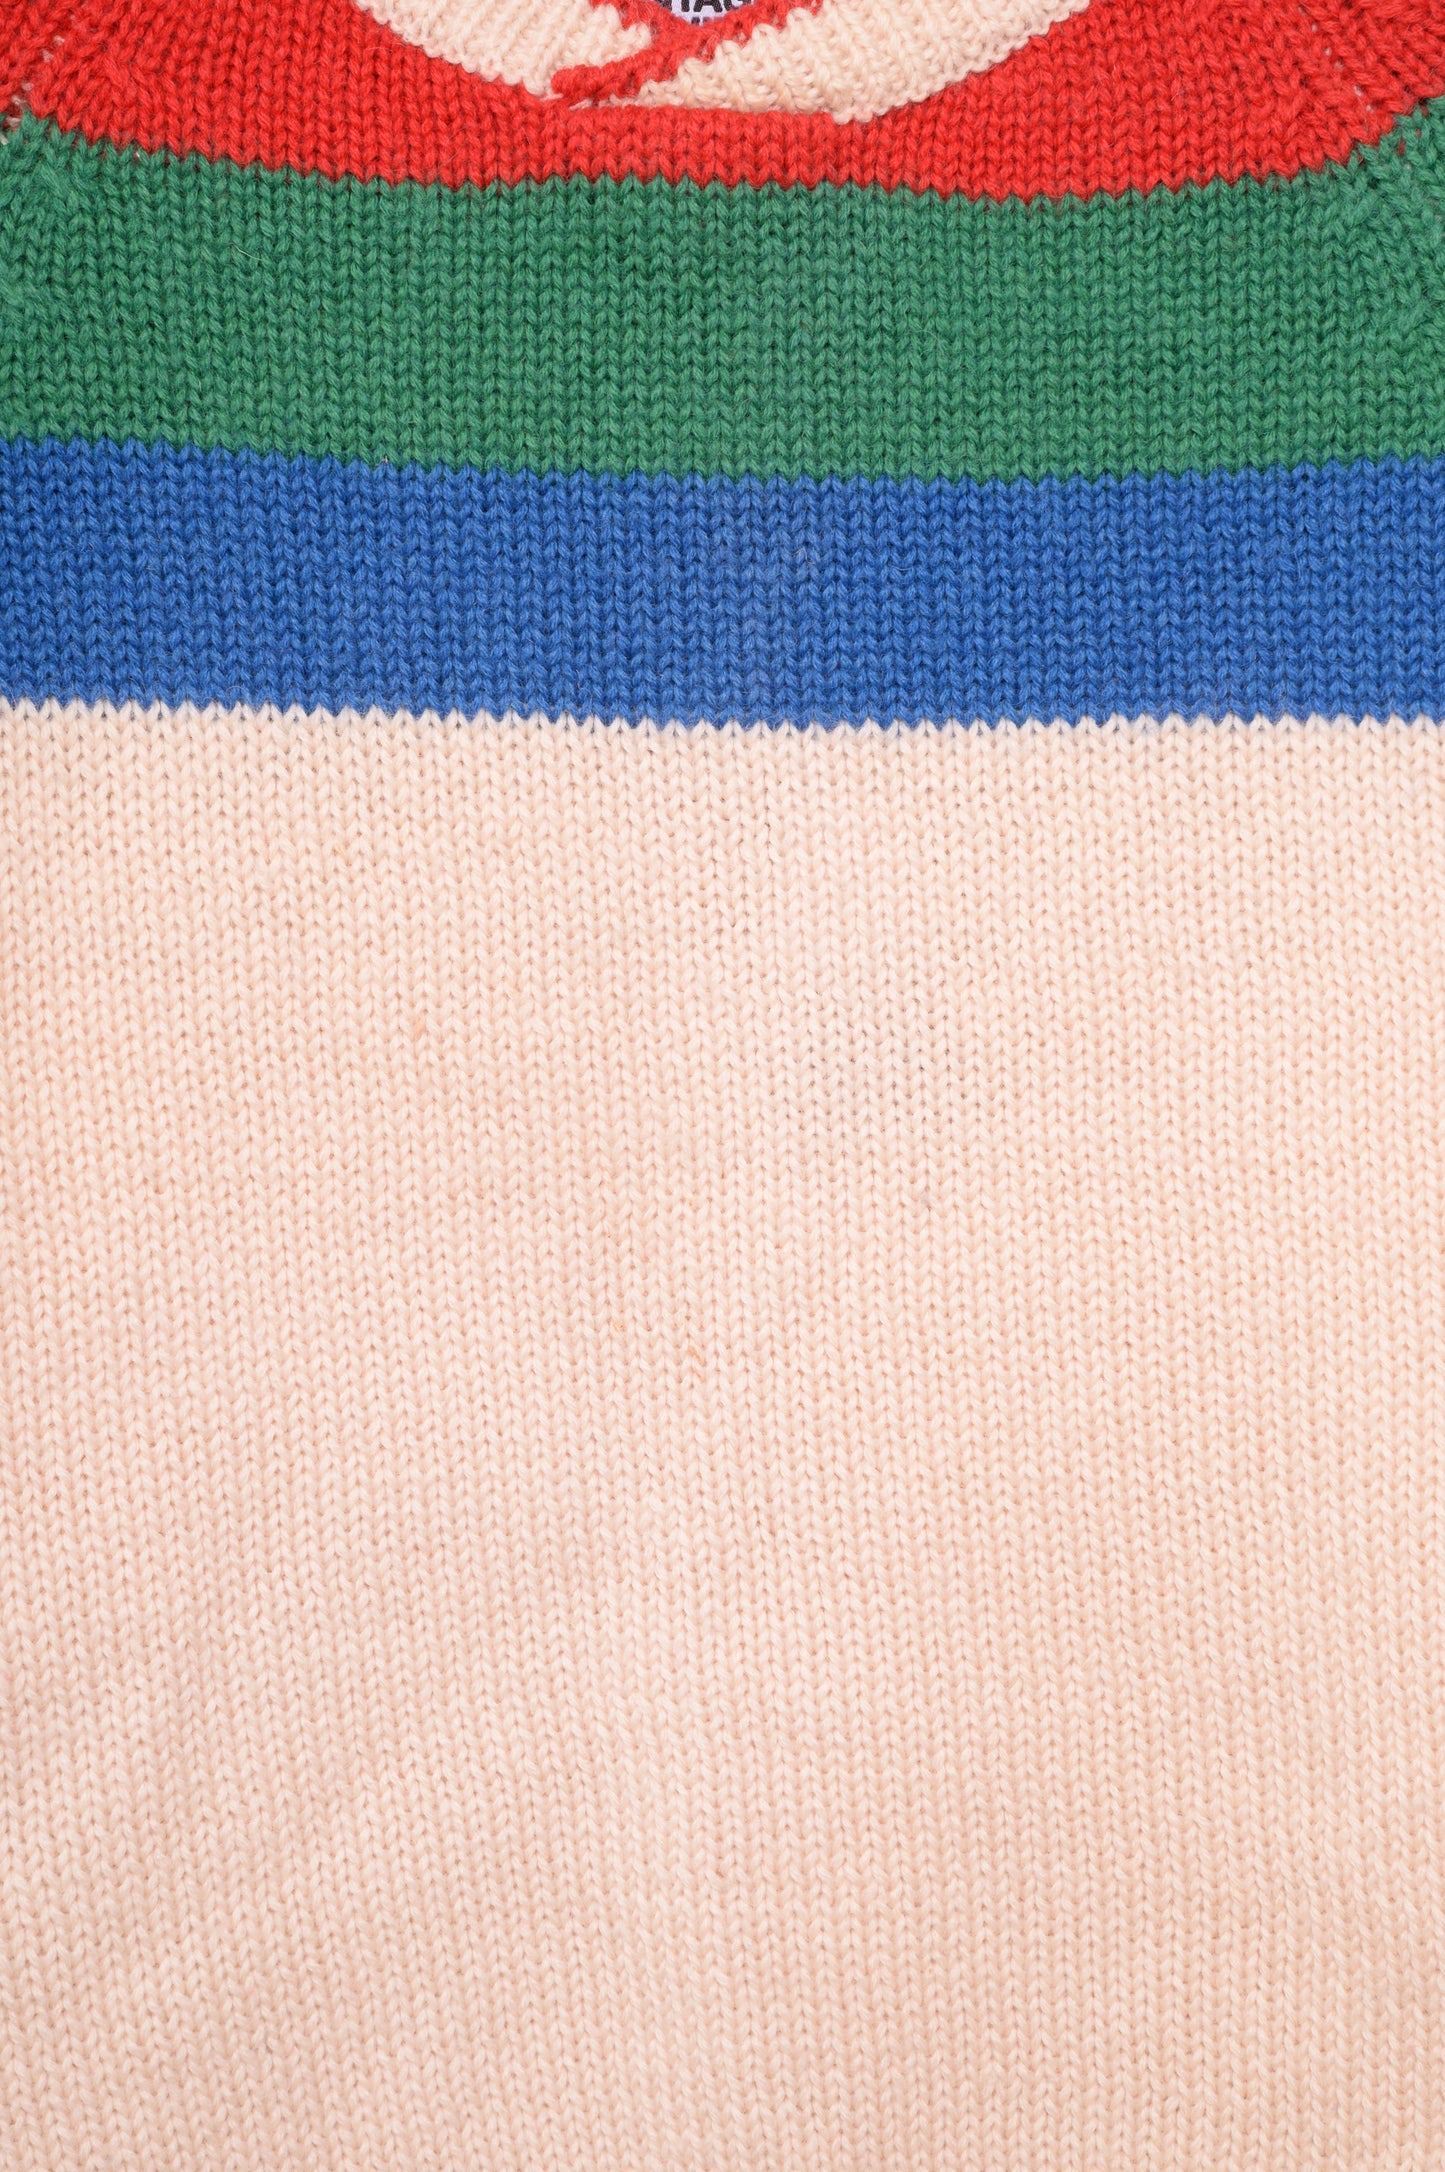 1980s Wool Stripe Sweater